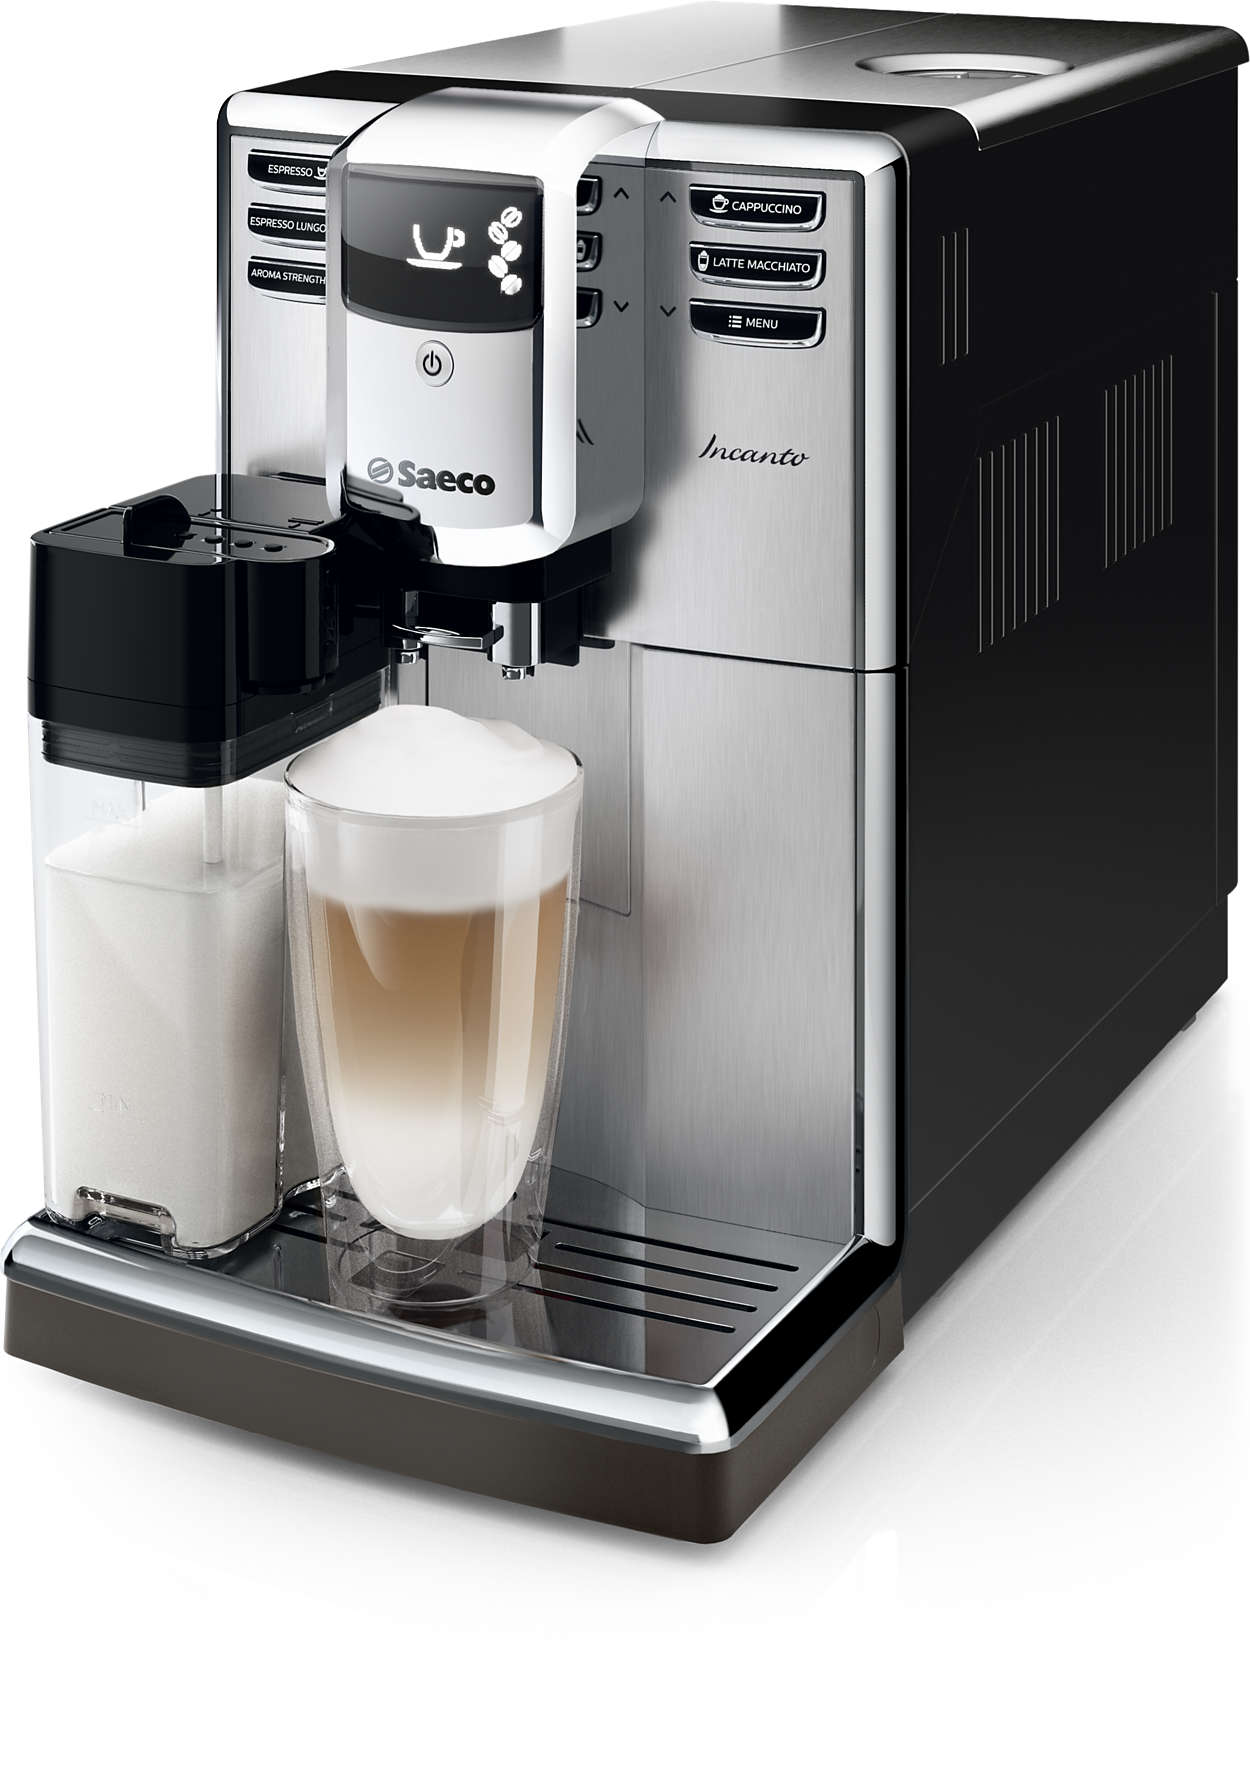 China Portrait statement Incanto Super-automatic espresso machine HD8917/48 | Saeco